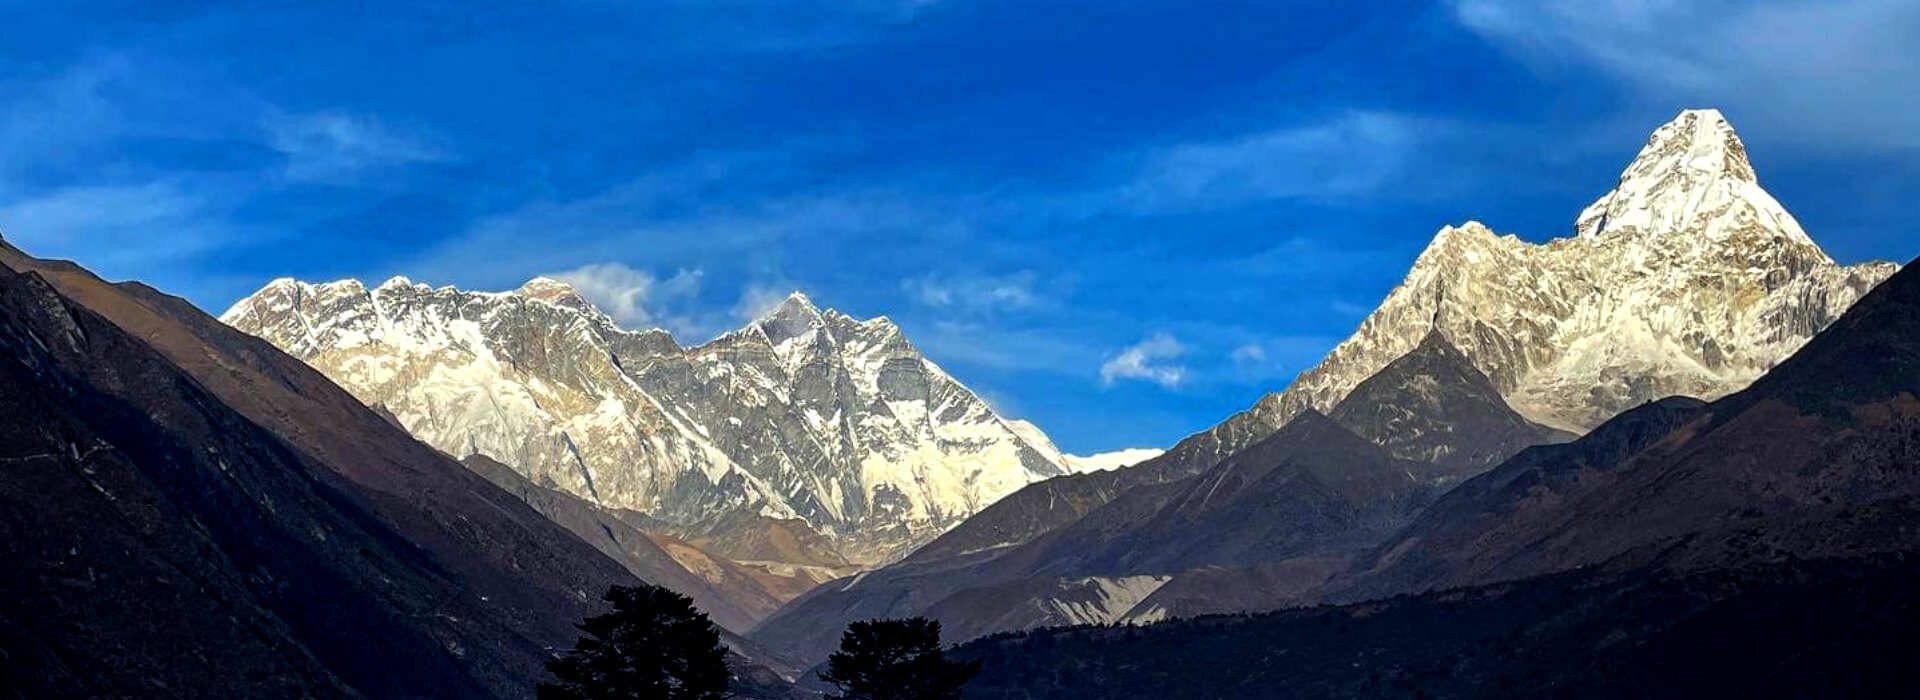 Everest View Trek – 5 Days